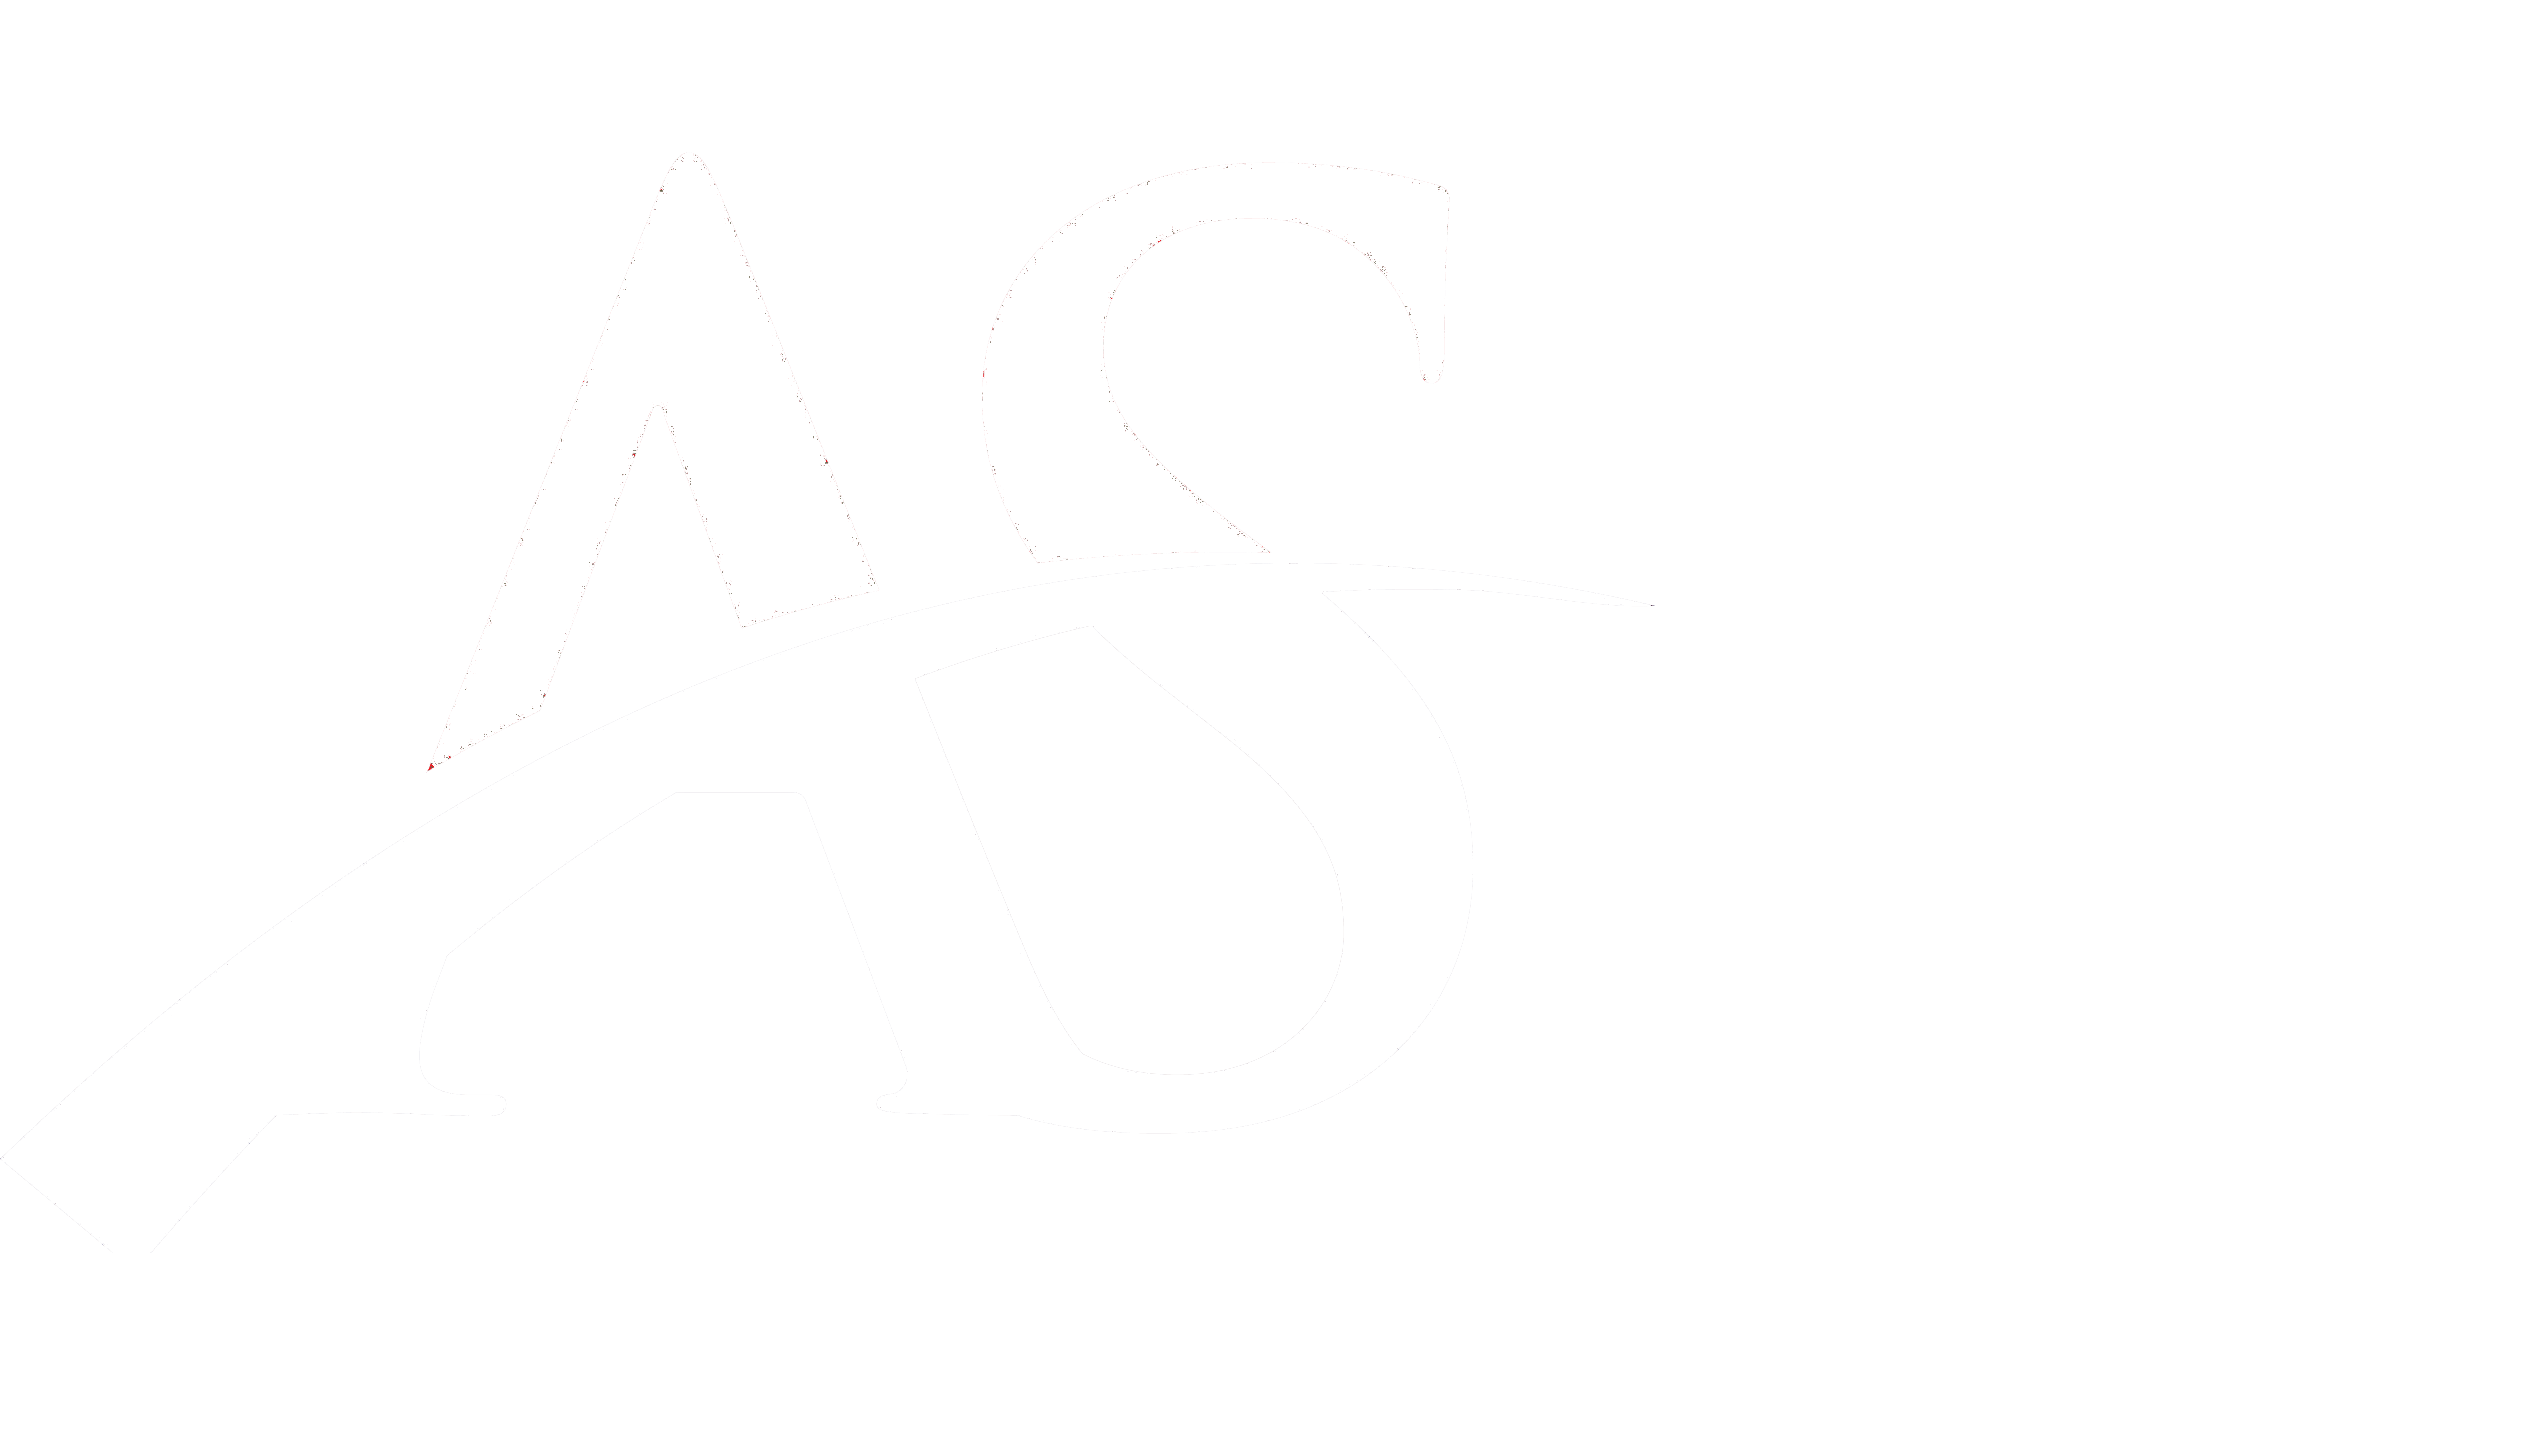 American School MED